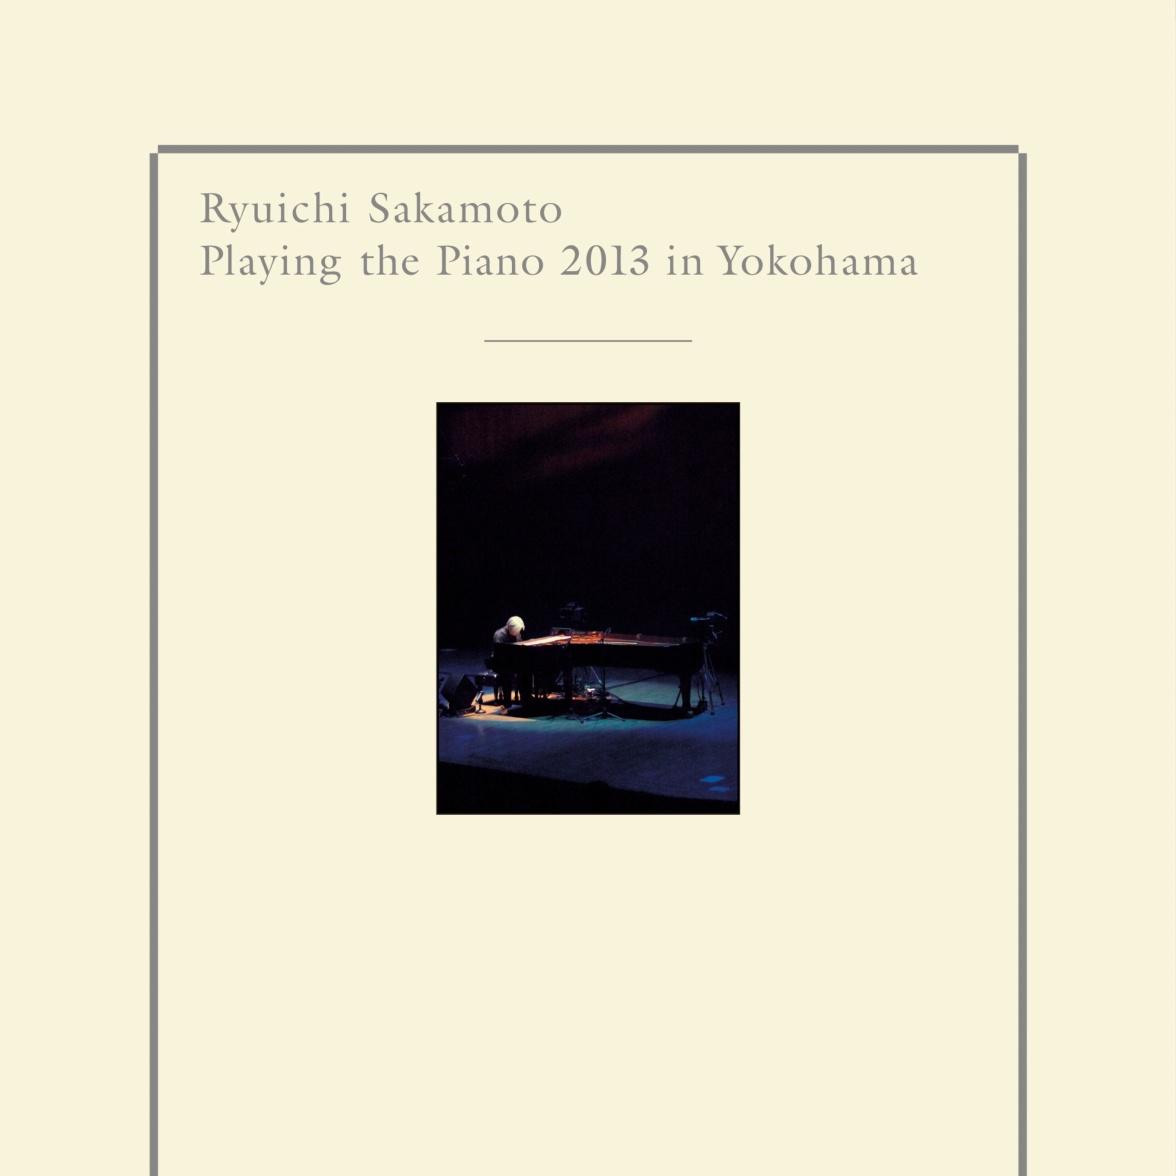 Ryuichi Sakamoto Playing the Piano 2013 in Yokohama